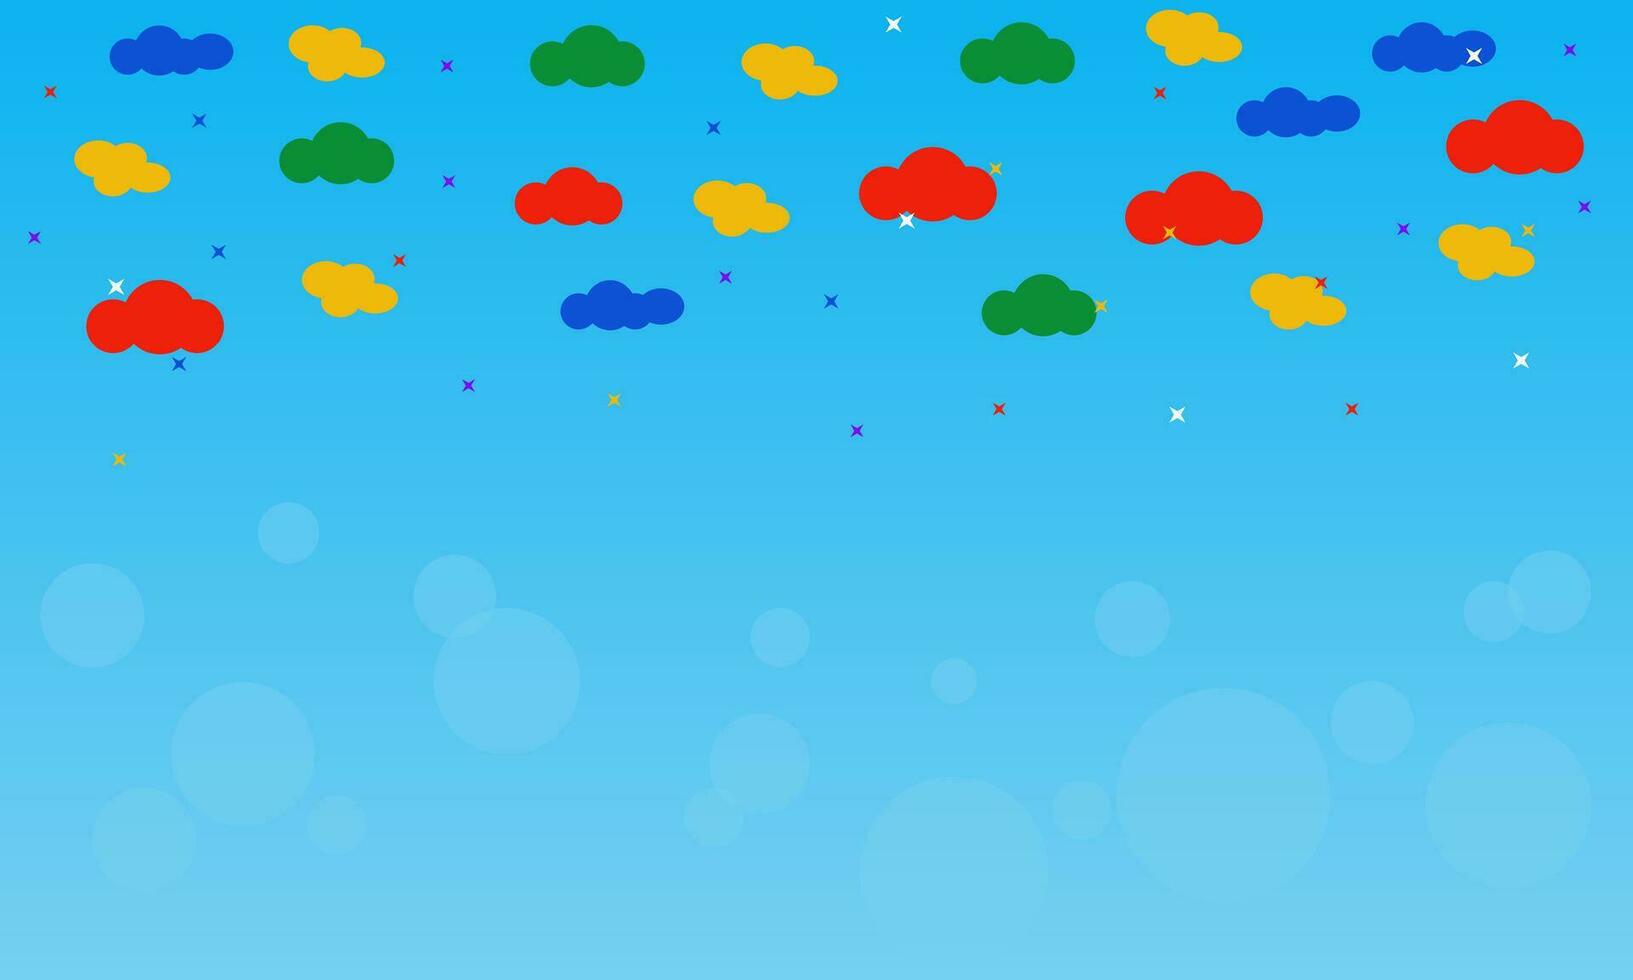 färgrik moln och pärlar isolerat på blå himmel bakgrund med bubblor vektor